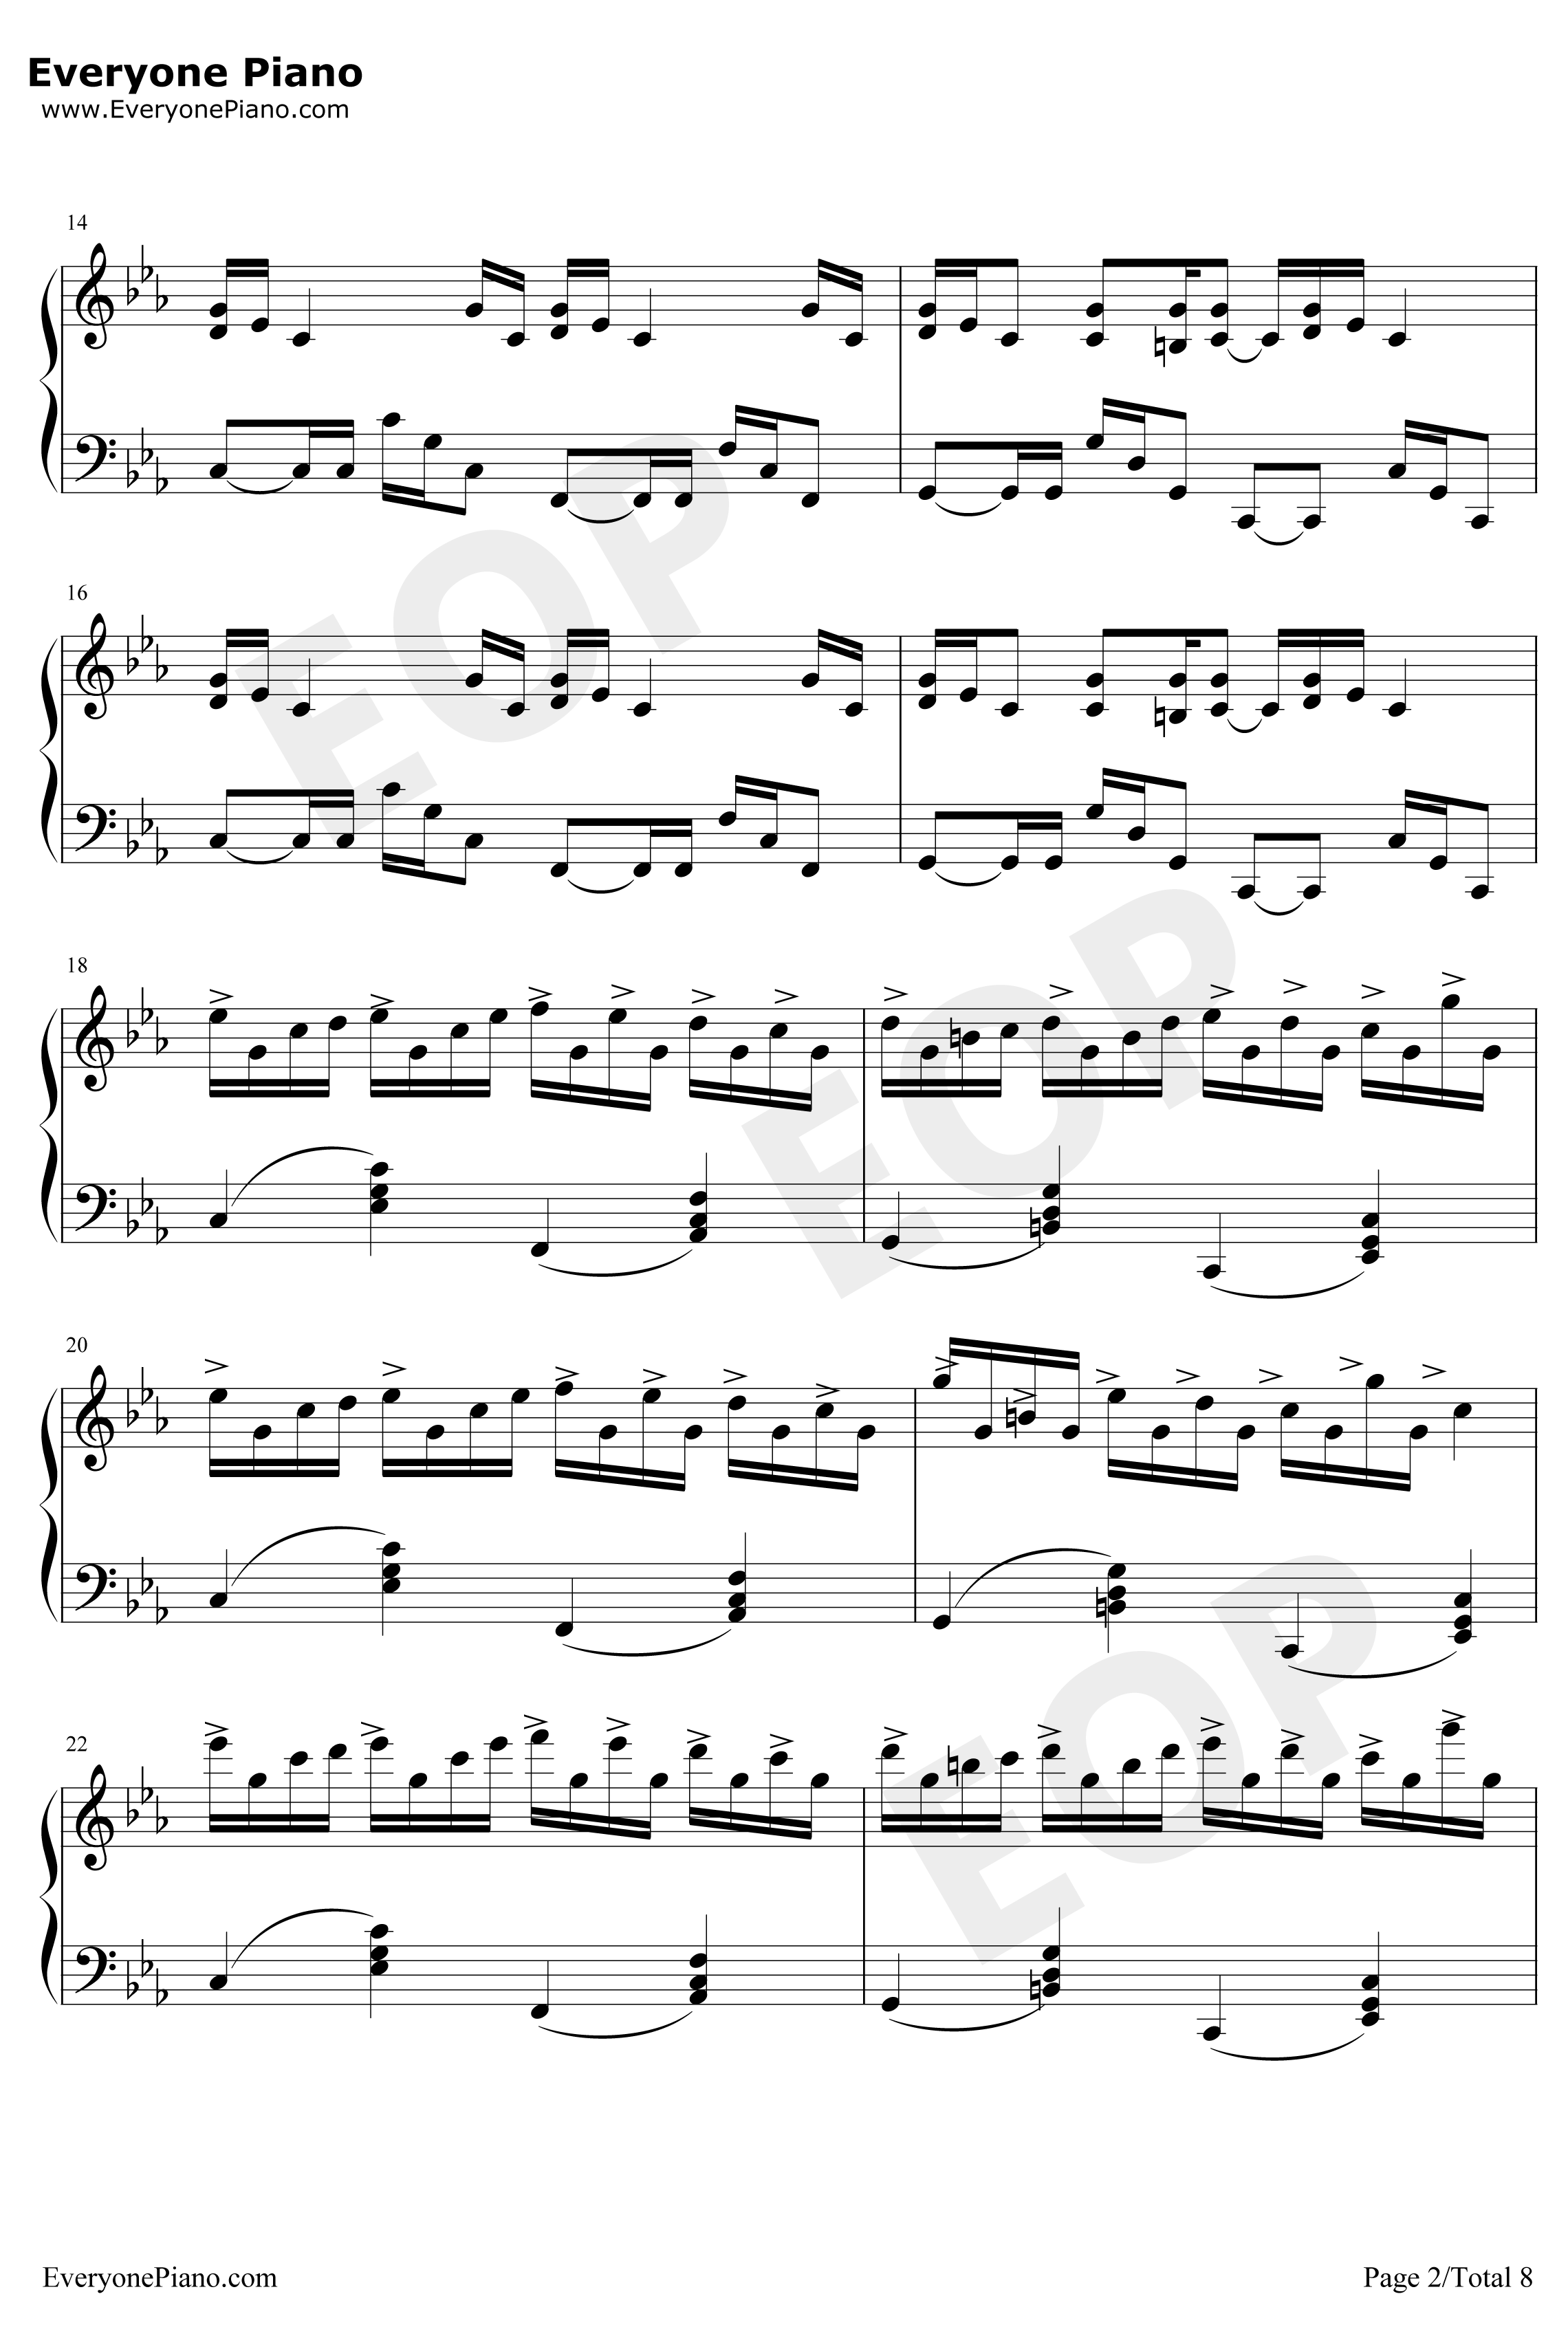 克罗地亚狂想曲钢琴谱-完美版-马克西姆2